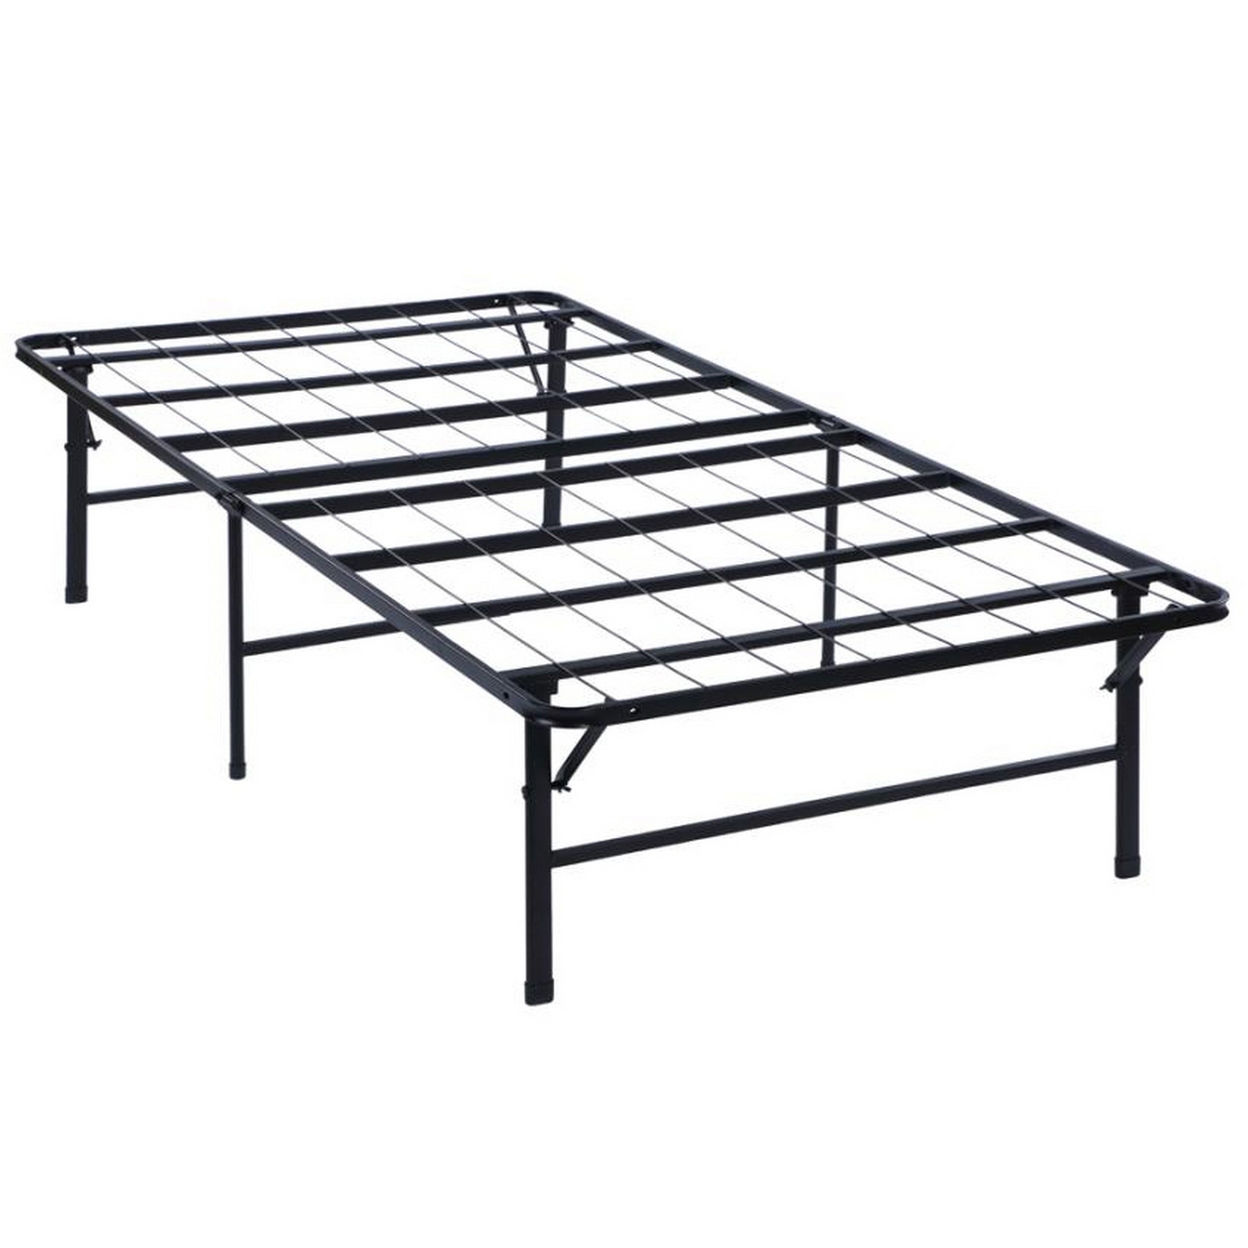 Metal California King Folding Platform Bed, Black- Saltoro Sherpi